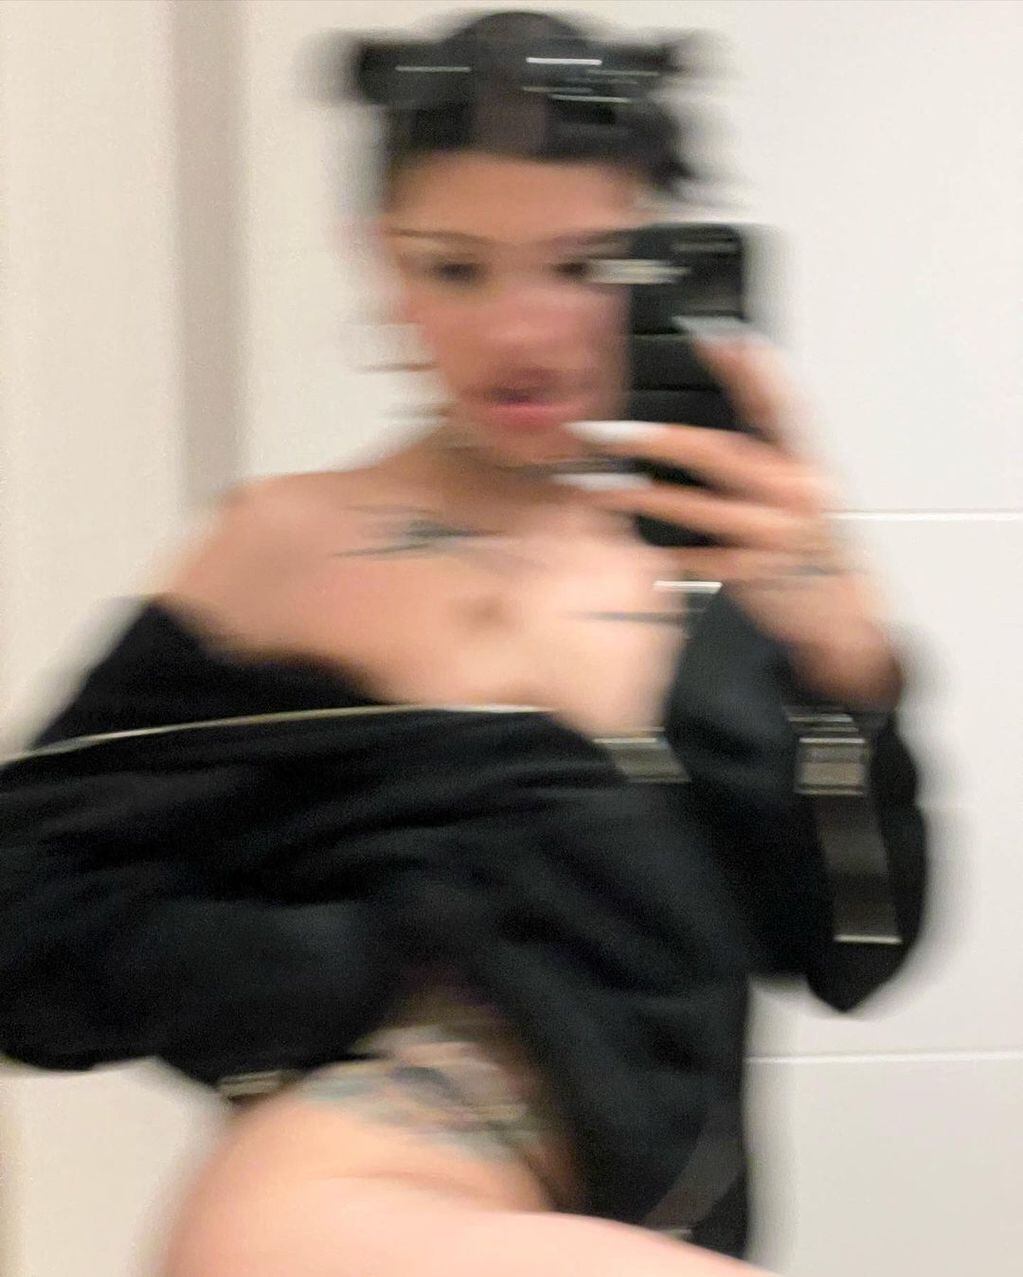 Cazzu puso en jaque la censura en Instagram luciendo tan solo una campera.